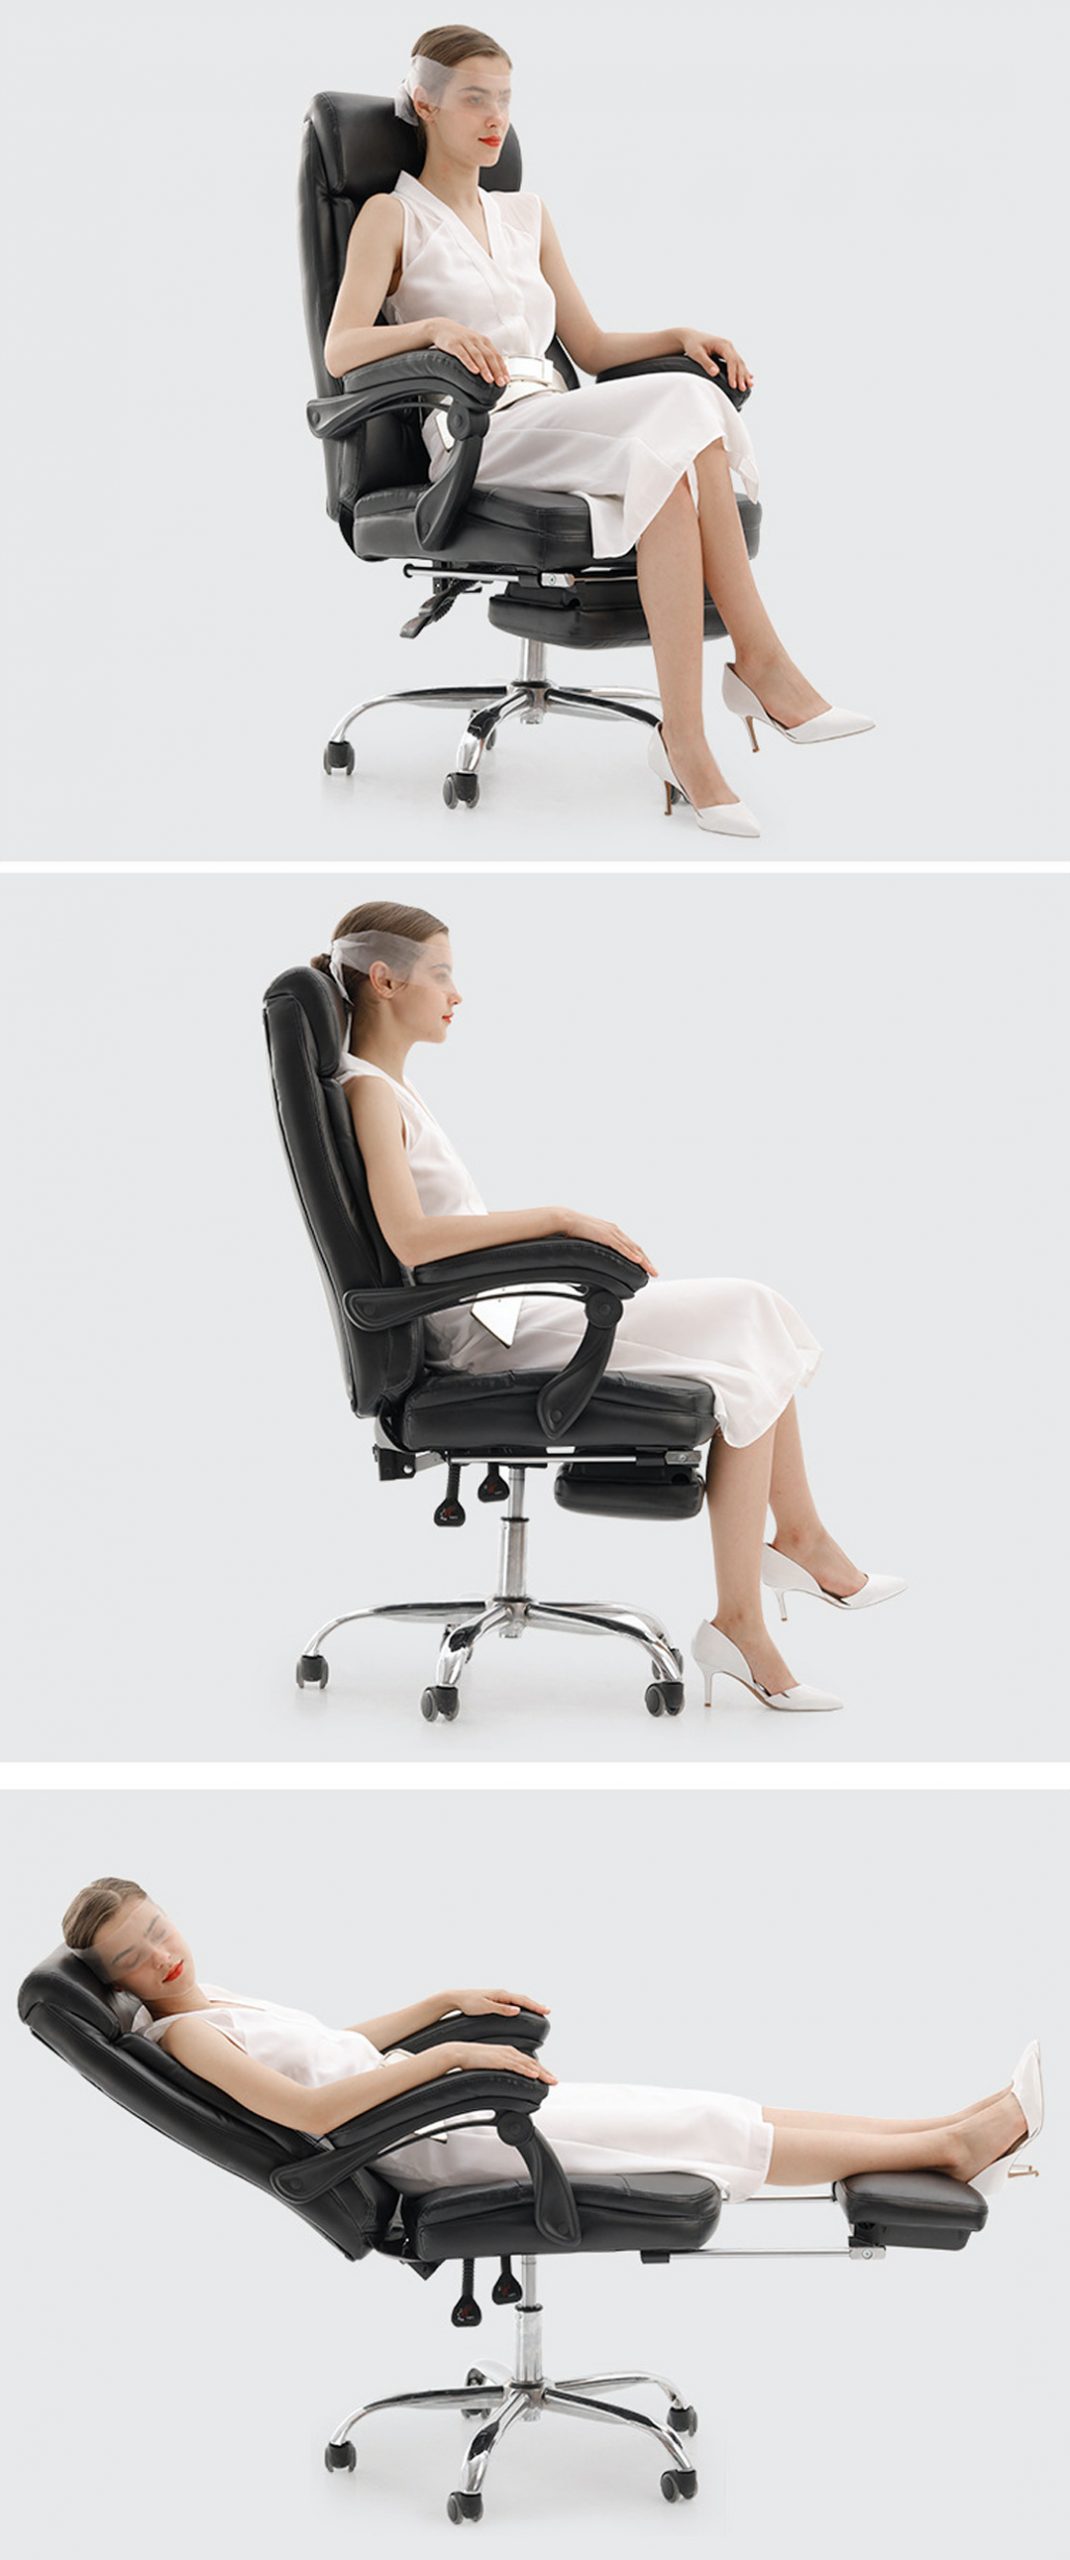 Hbada Office Boss Chair Executive Edition